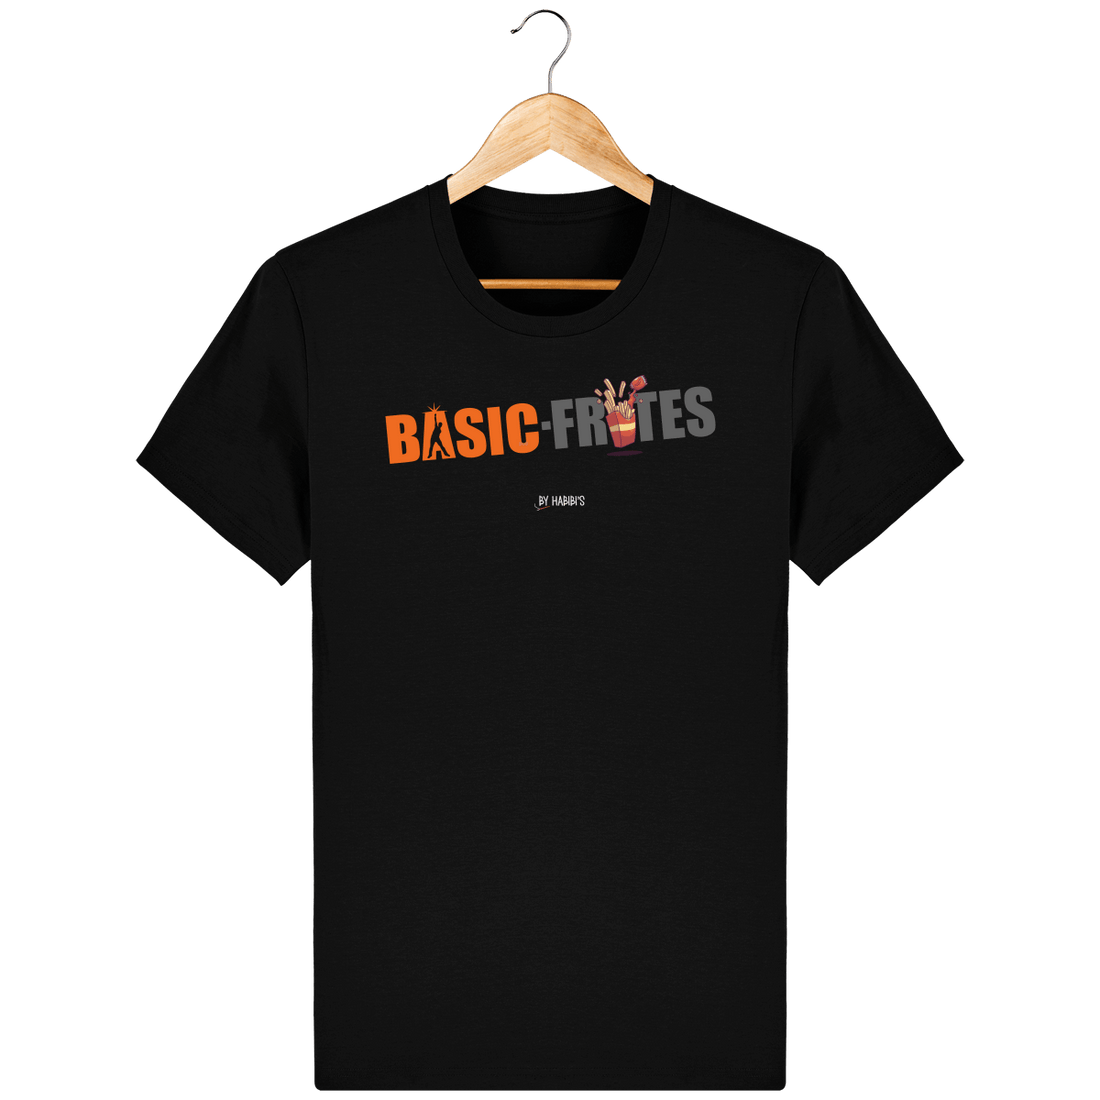 Unisexe>Tee-shirts - T-shirt Homme <br> Basic Frites